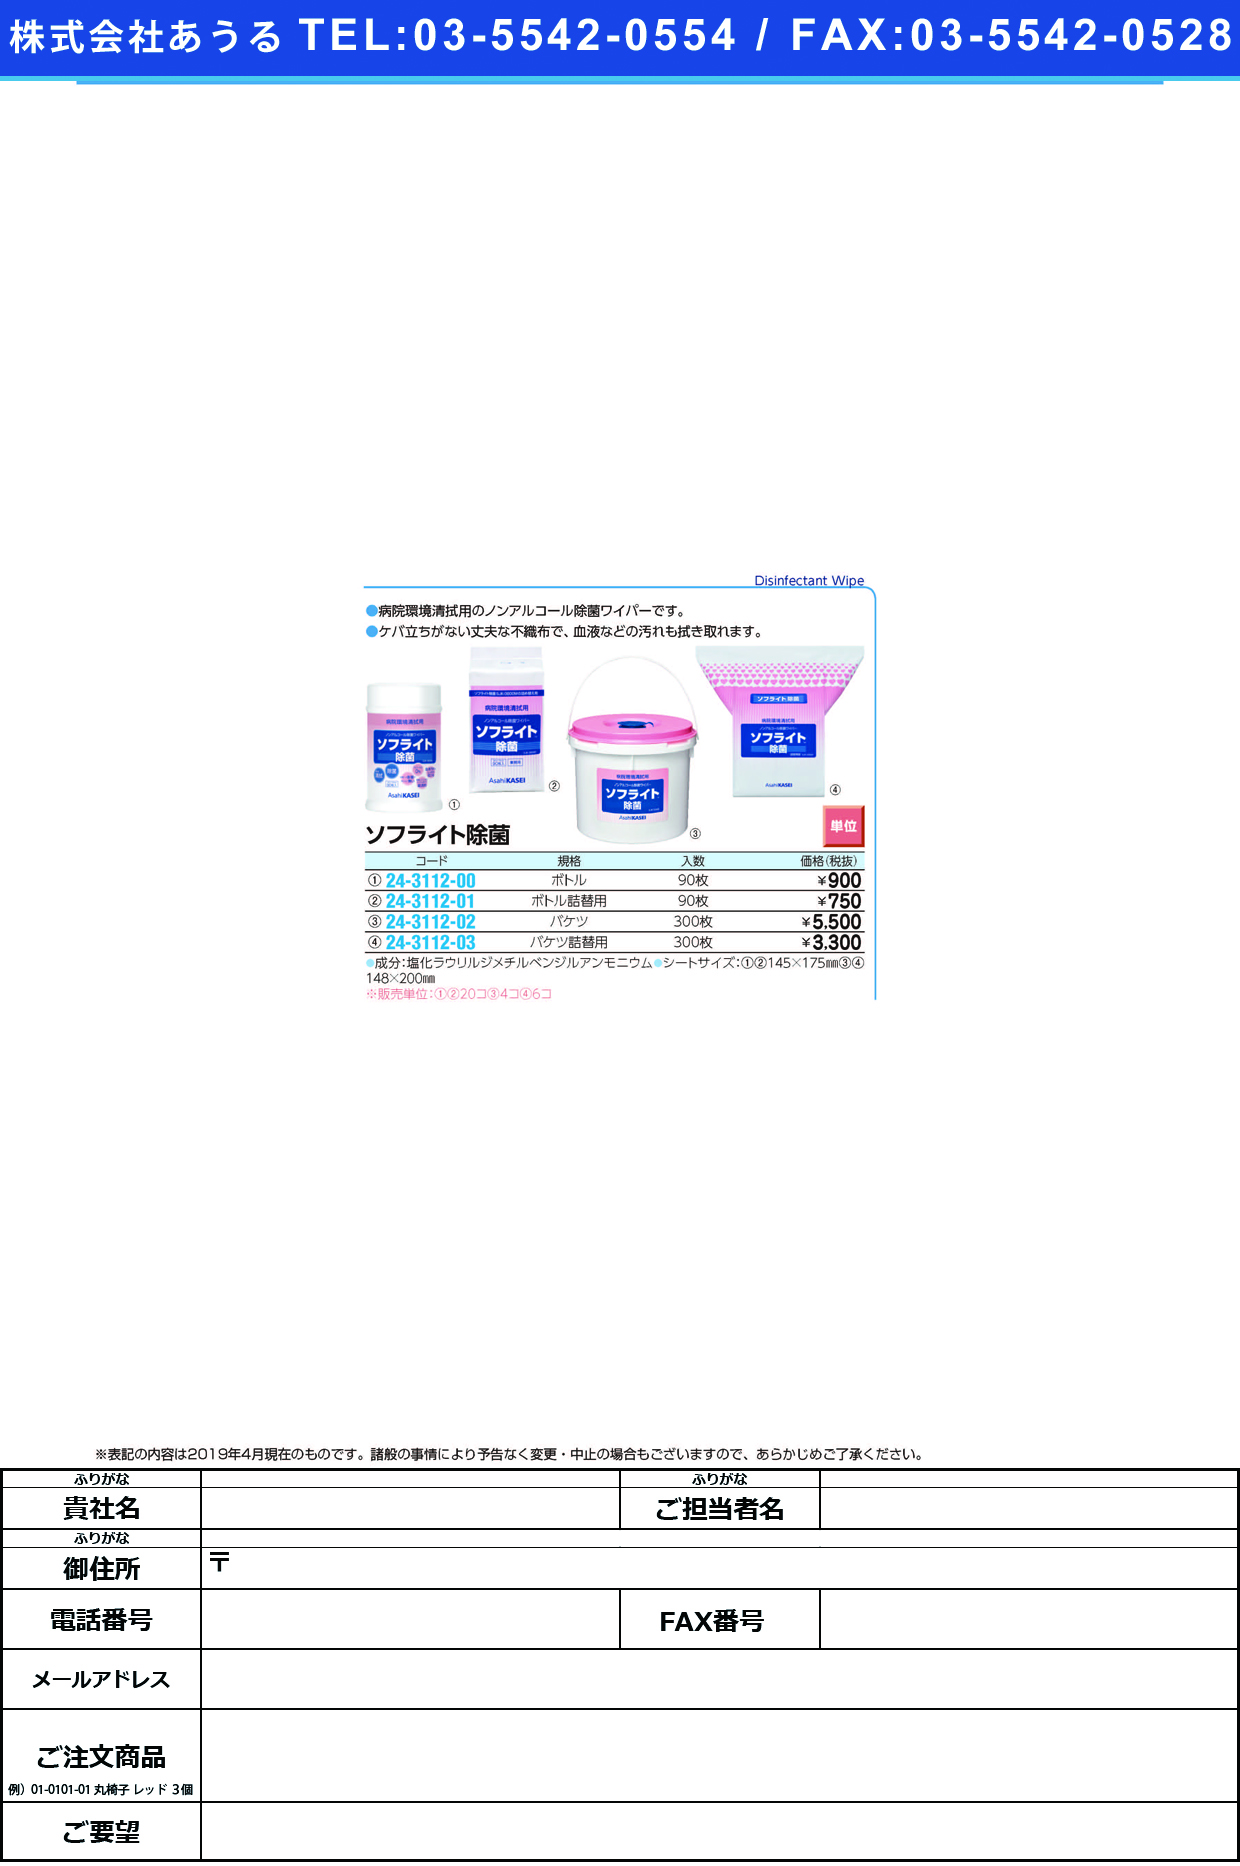 (24-3112-02)ソフライト除菌バケツ 148X200MM(300ﾏｲ) ｿﾌﾗｲﾄｼﾞｮｷﾝﾊﾞｹﾂ【4個単位】【2019年カタログ商品】